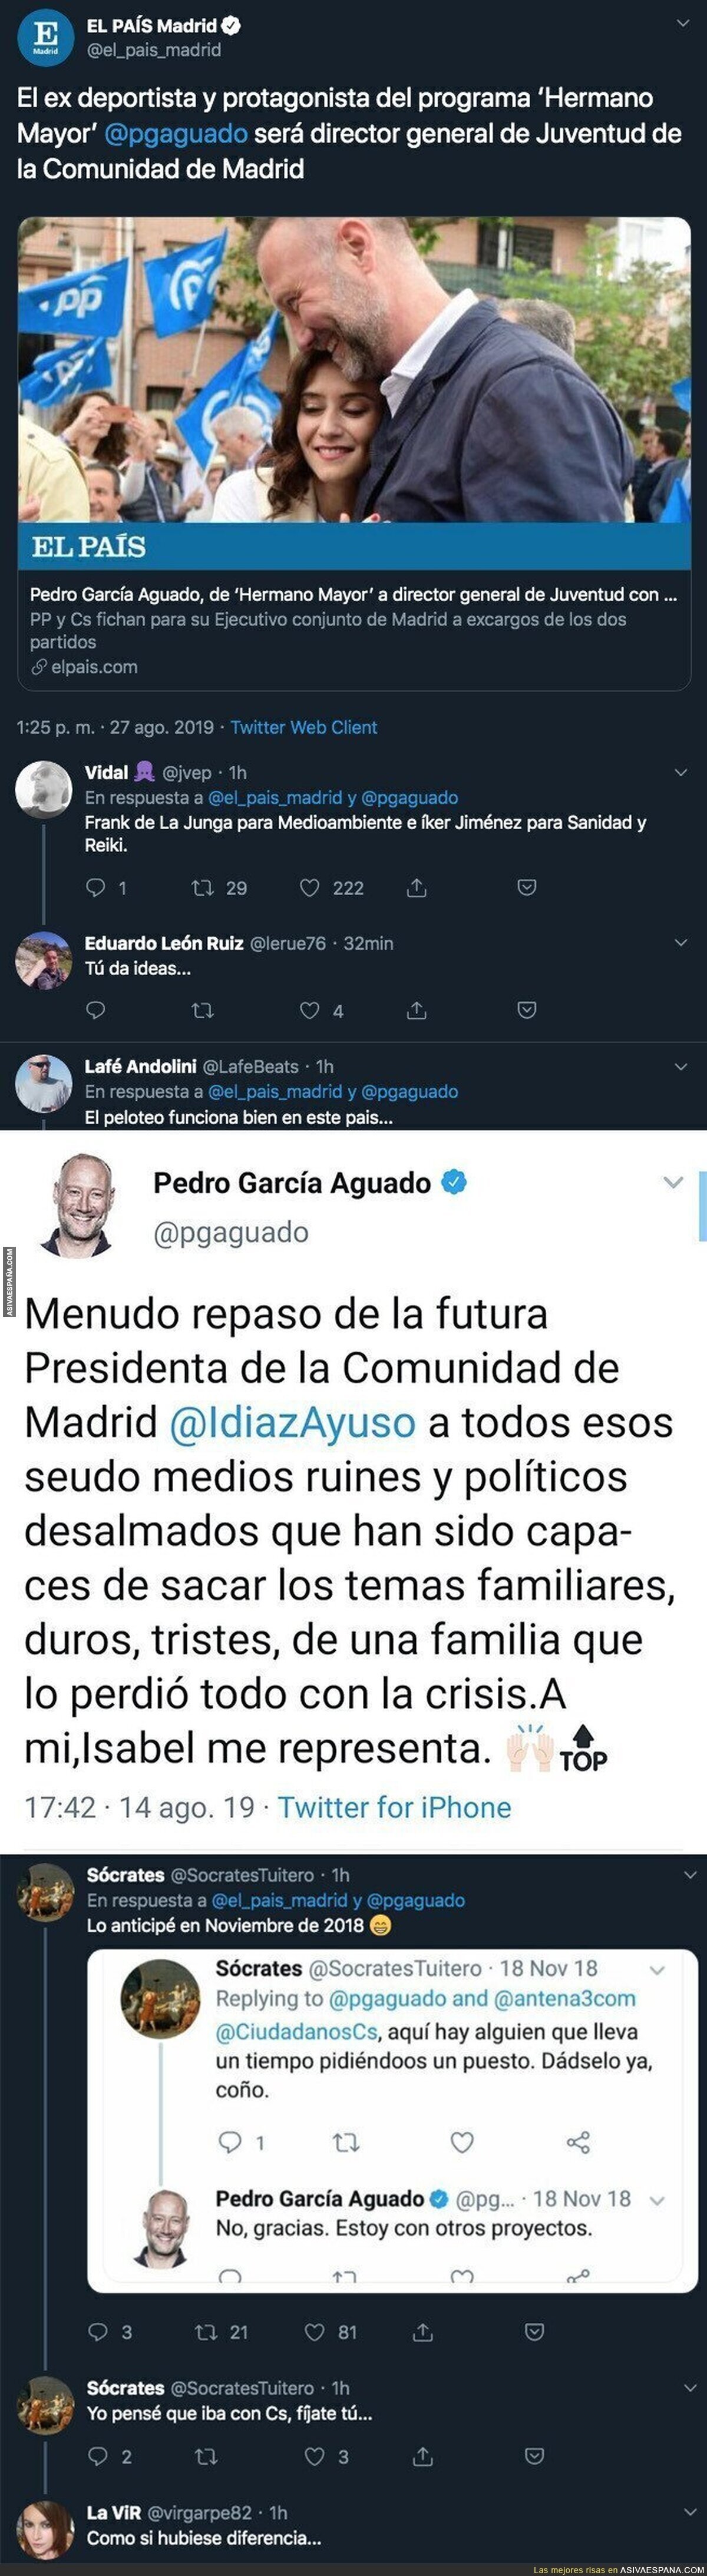 Pedro García Aguado logra un puesto en la Comunidad de Madrid tras pelotear a todo el PP